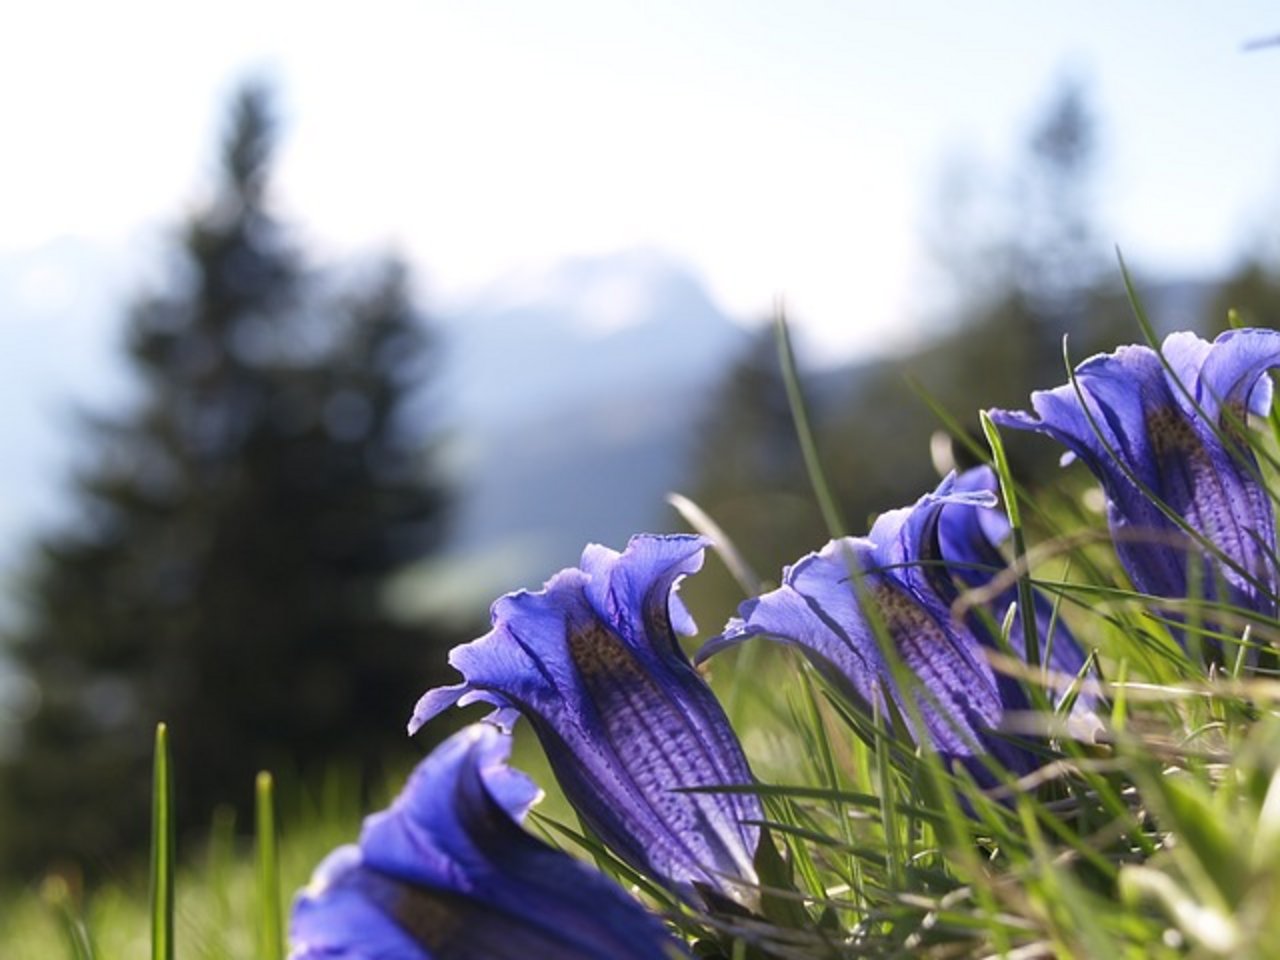 Alpenpflanzen wie der Enzian sind an die Bedingungen auf einer bestimmten Höhe angepasst. Offenbar schreitet der Klimawandel heute zu schnell voran und sie können sich nicht rechtzeitig neu anpassen. (Bild Pixabay)